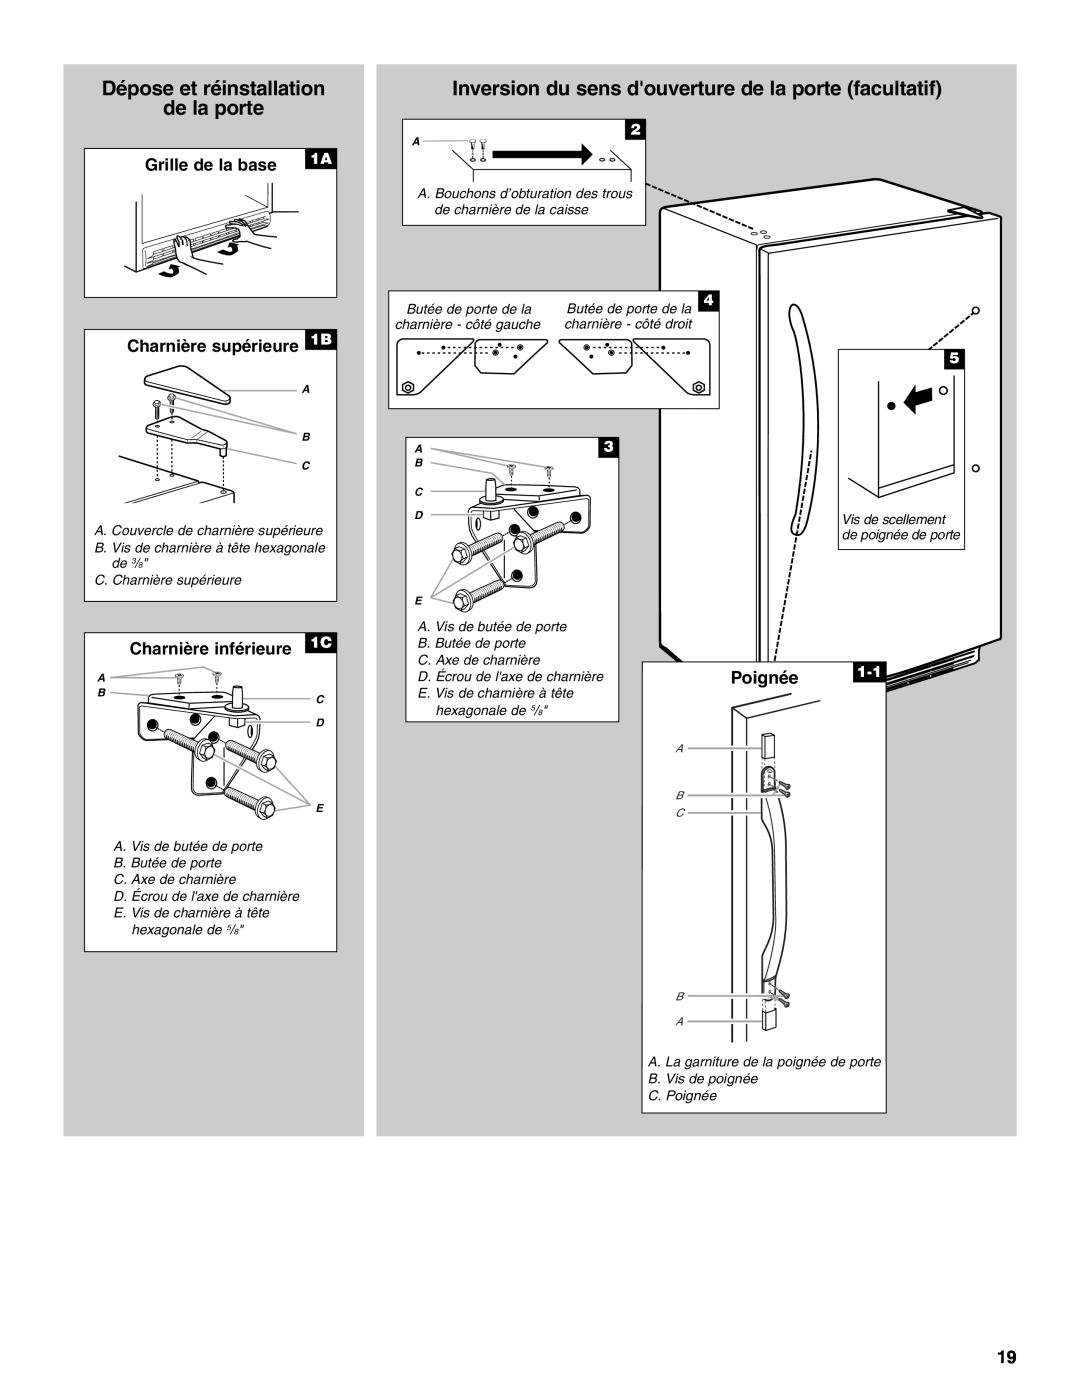 Amana W10326797A manual Dépose et réinstallation de la porte, Inversion du sens douverture de la porte facultatif, Poignée 